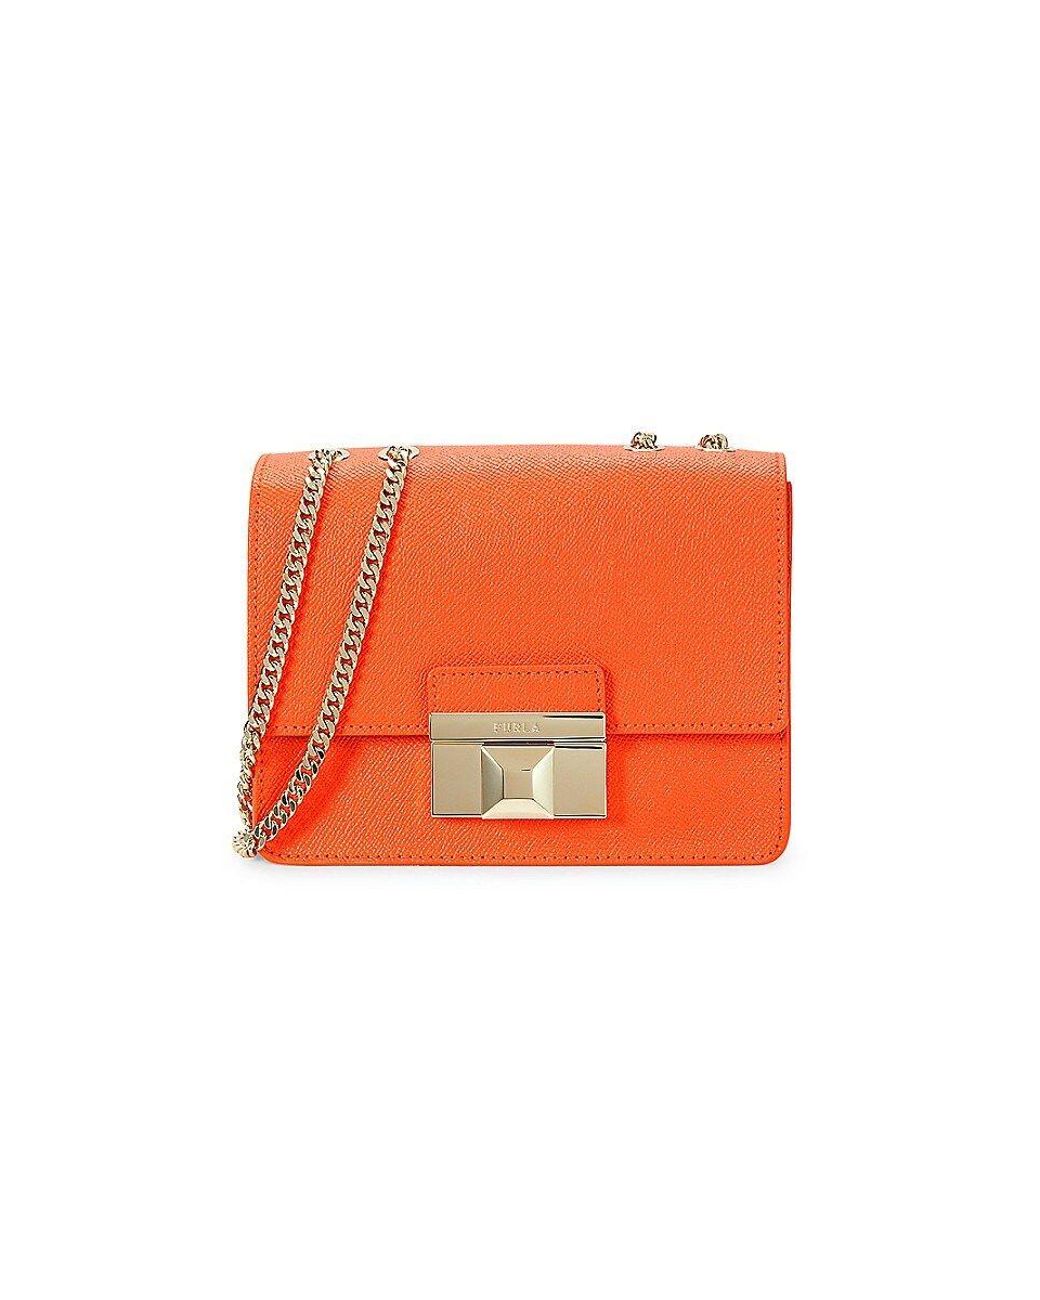 Furla Venere Leather Shoulder Bag in Orange | Lyst